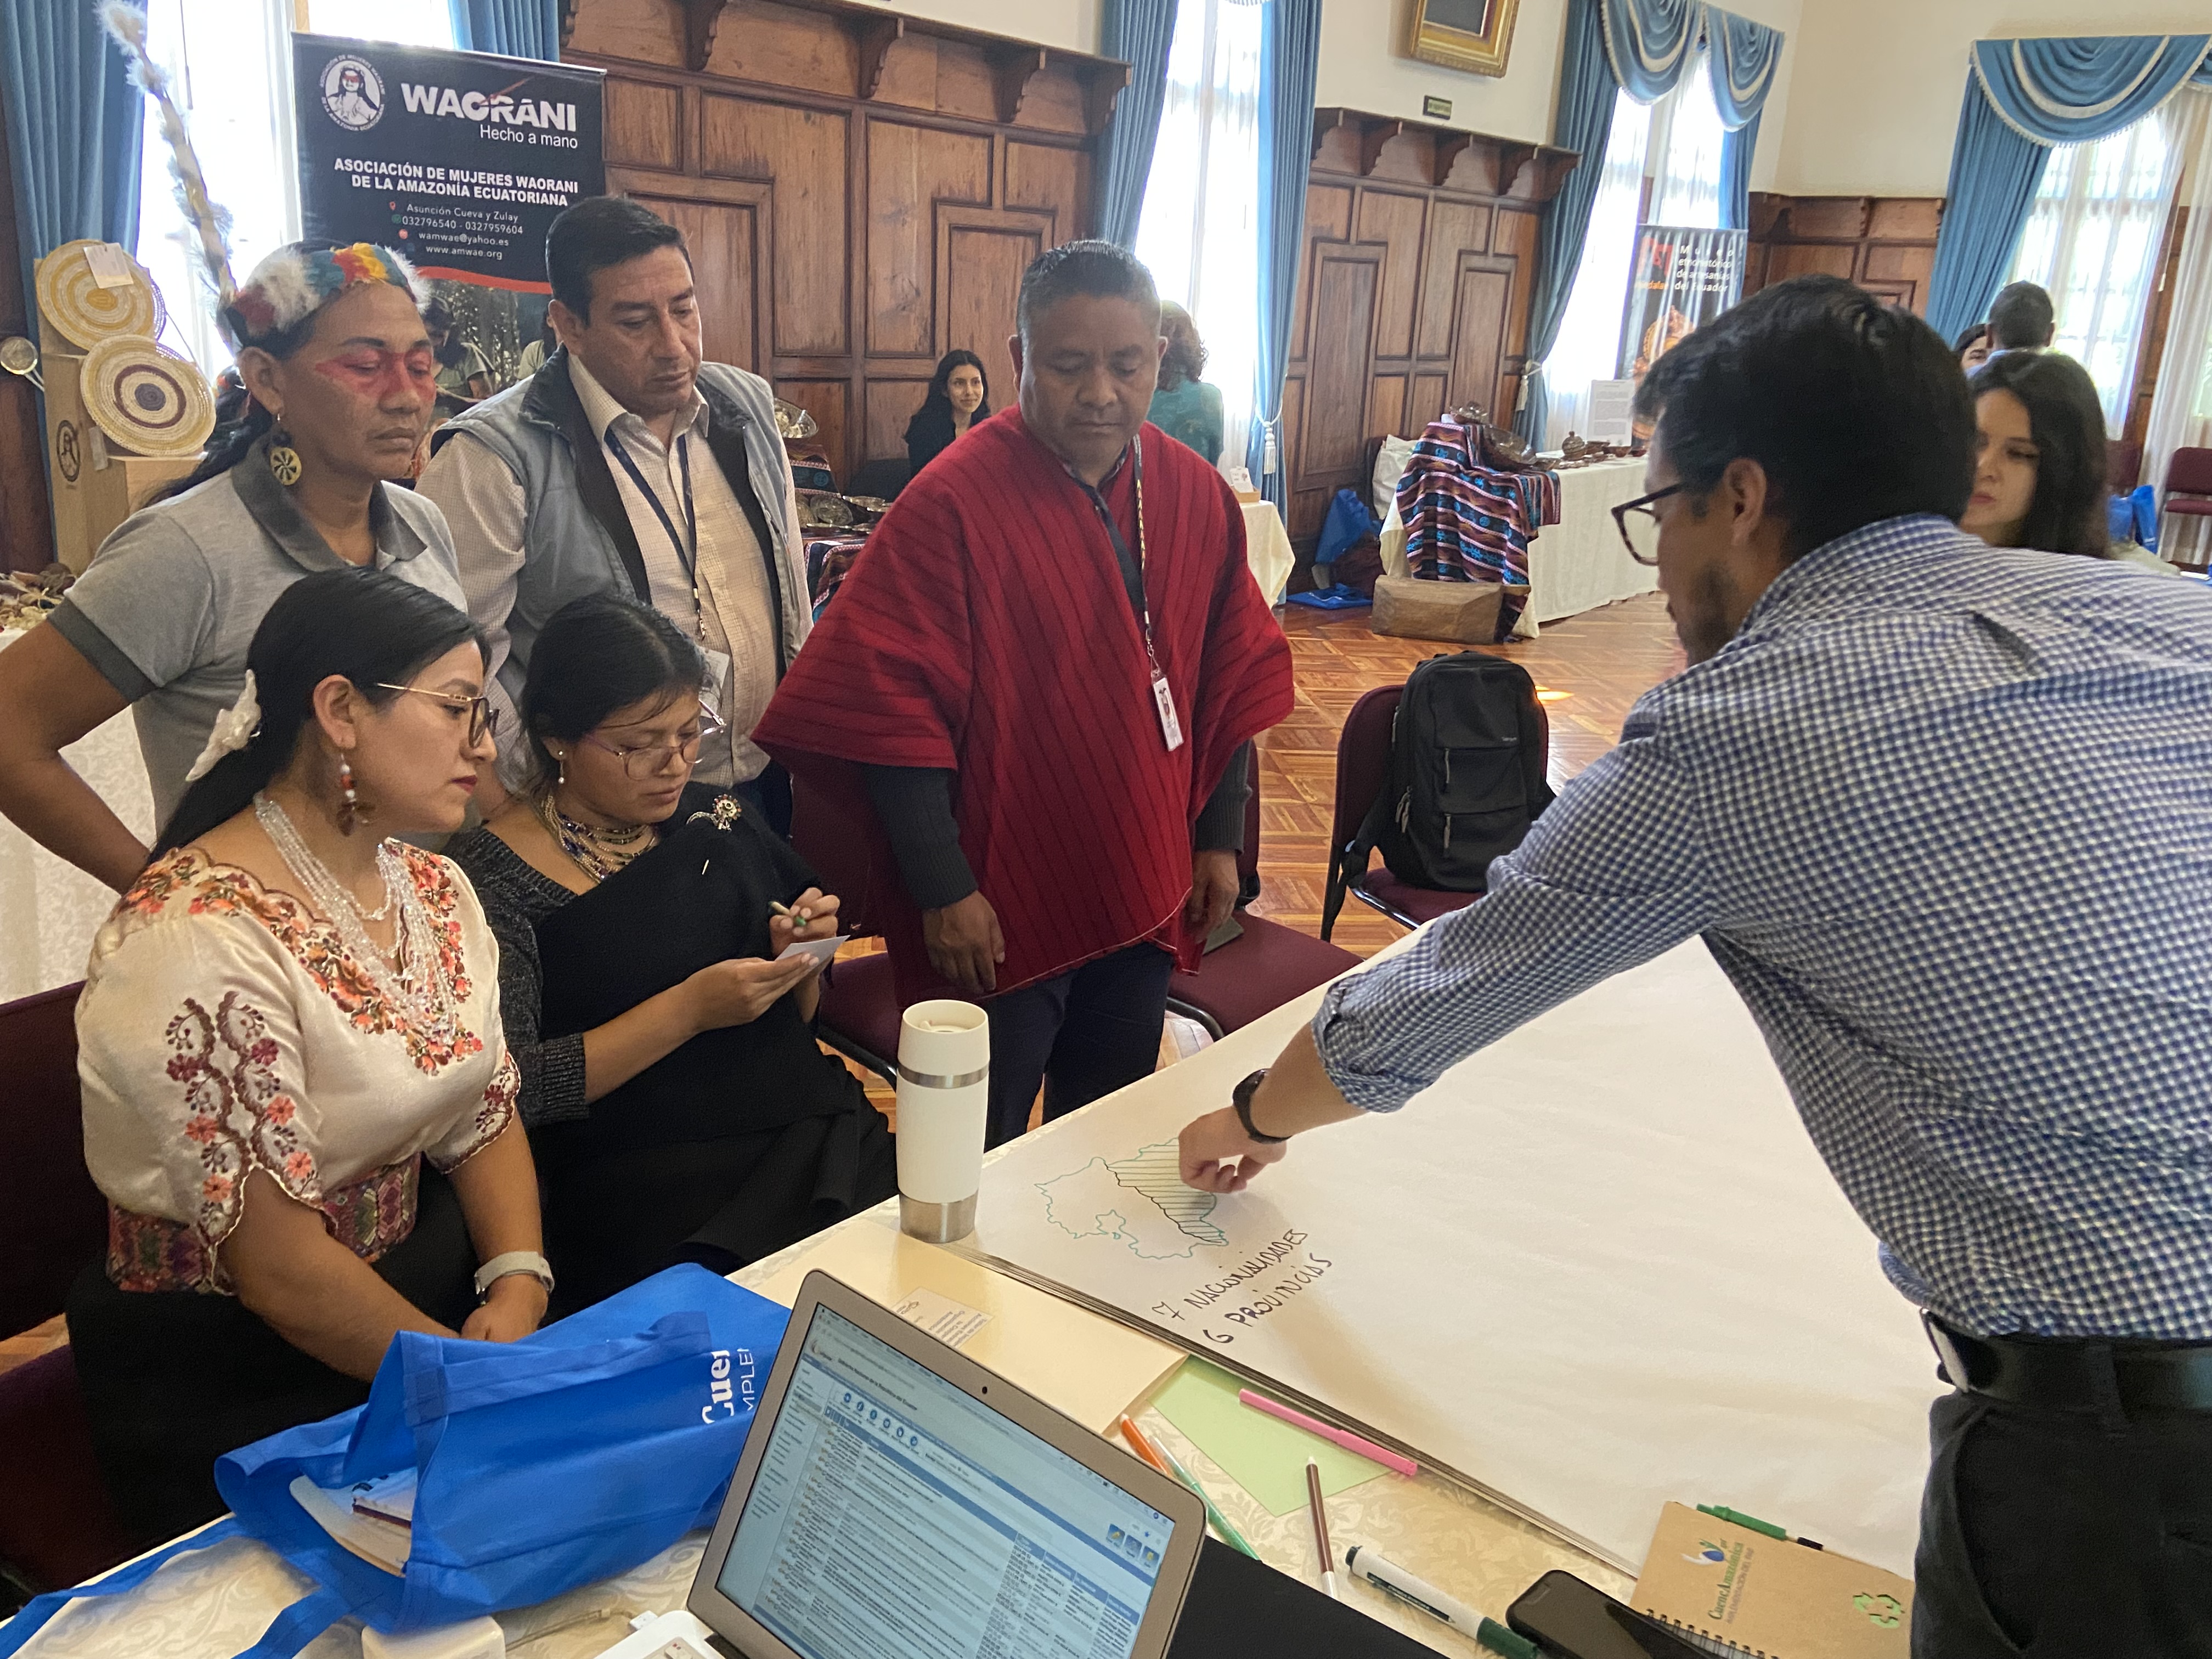 Equador reúne especialistas em Gestão Integrada de Recursos Hídricos e representantes de comunidades indígenas amazônicas para formular recomendações à implementação do PAE